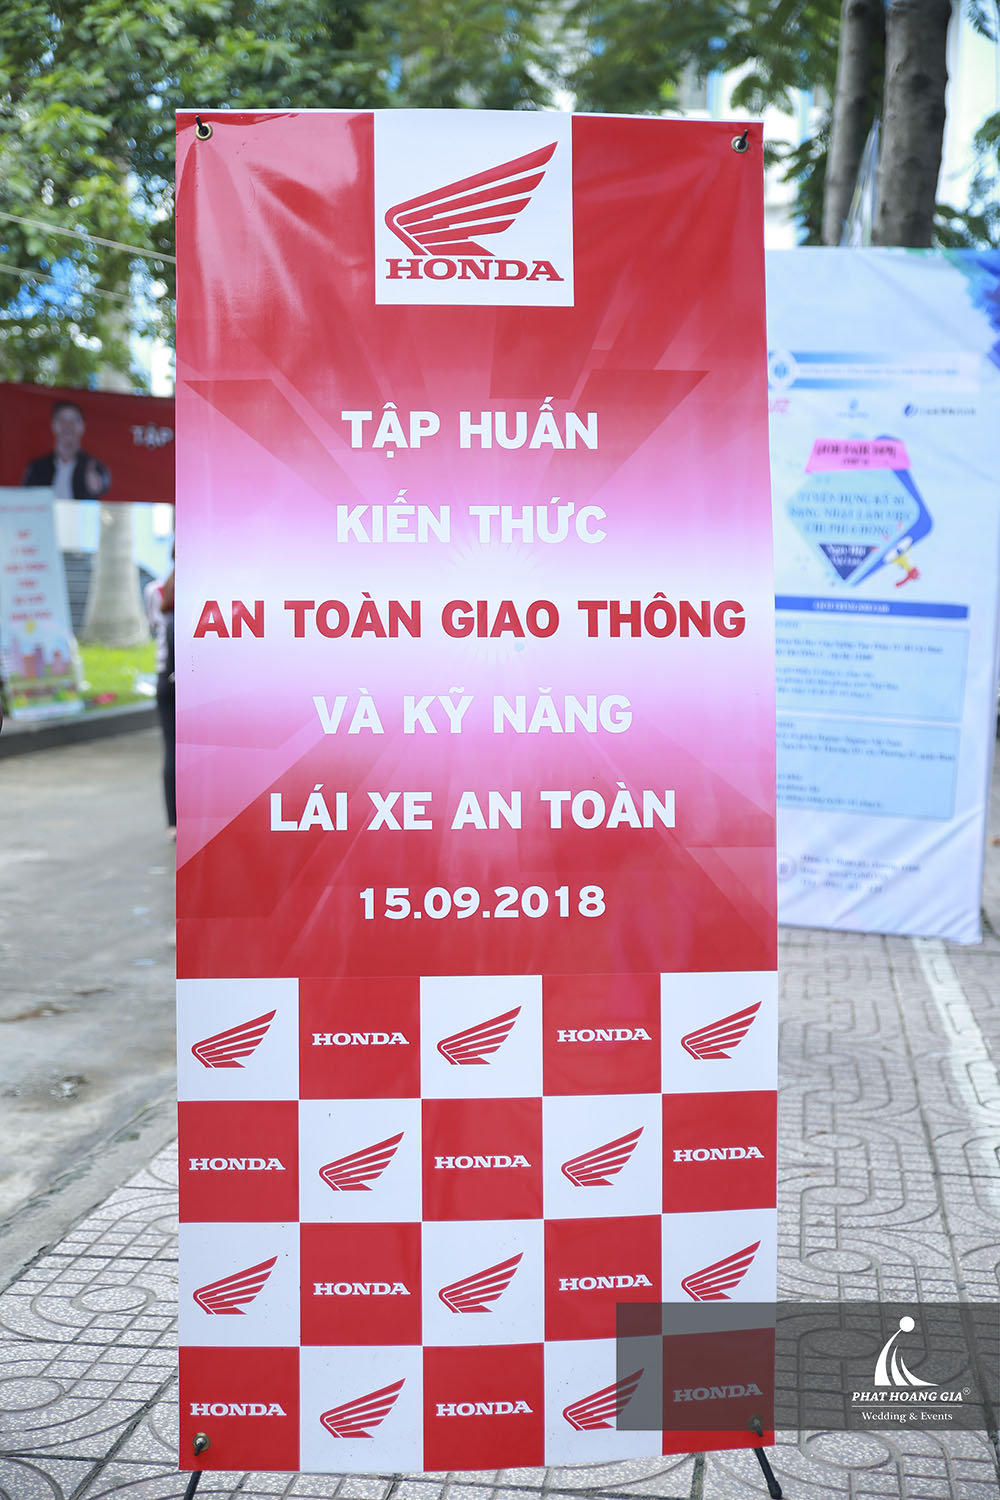 Ngày hội 4s - Head Honda Quang Khánh